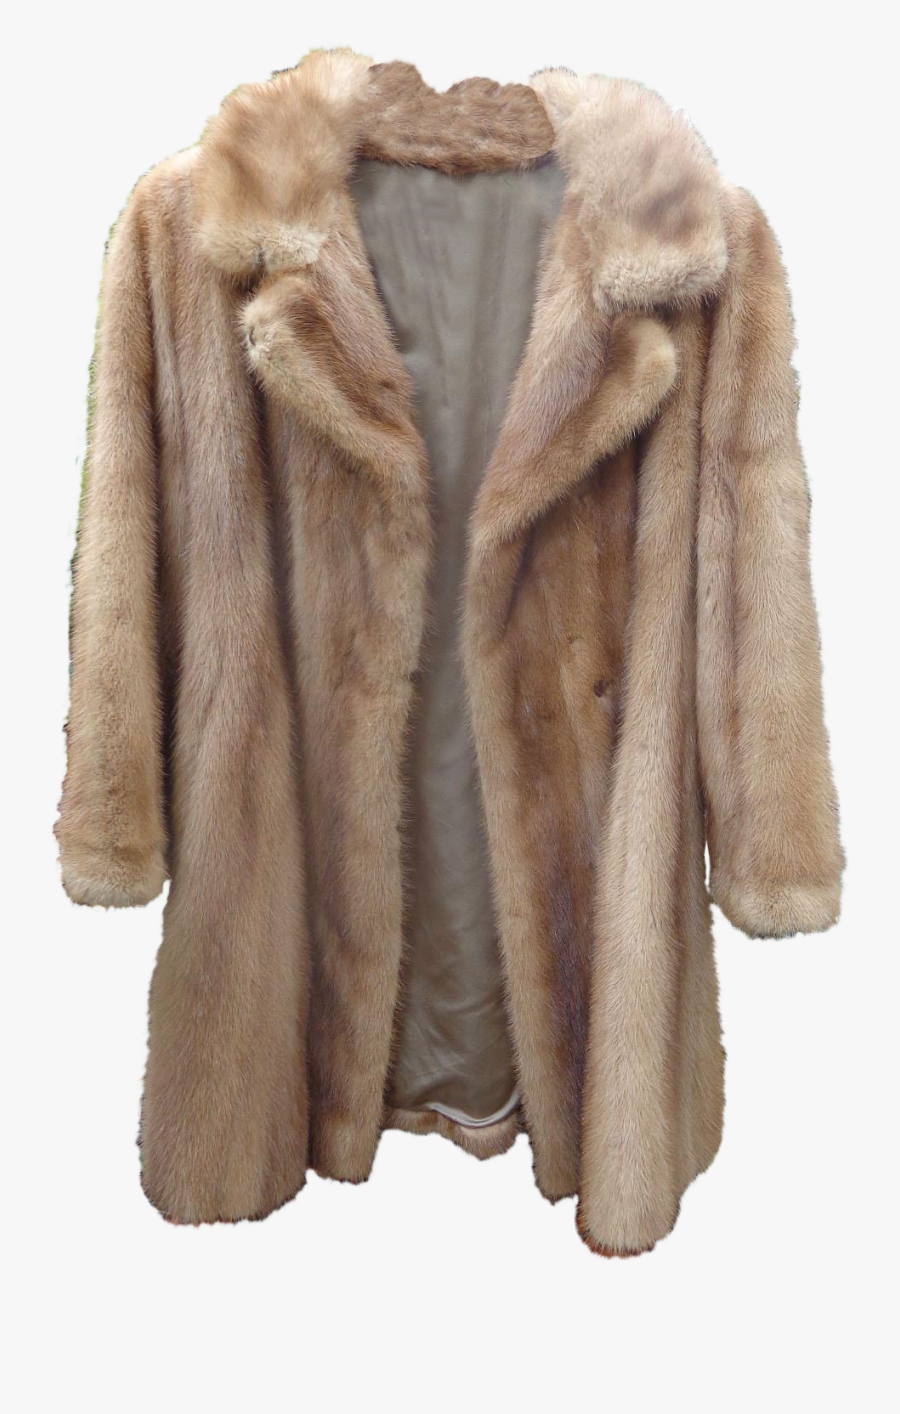 Fur Jacket Png Clipart - Fur Coat Png, Transparent Clipart